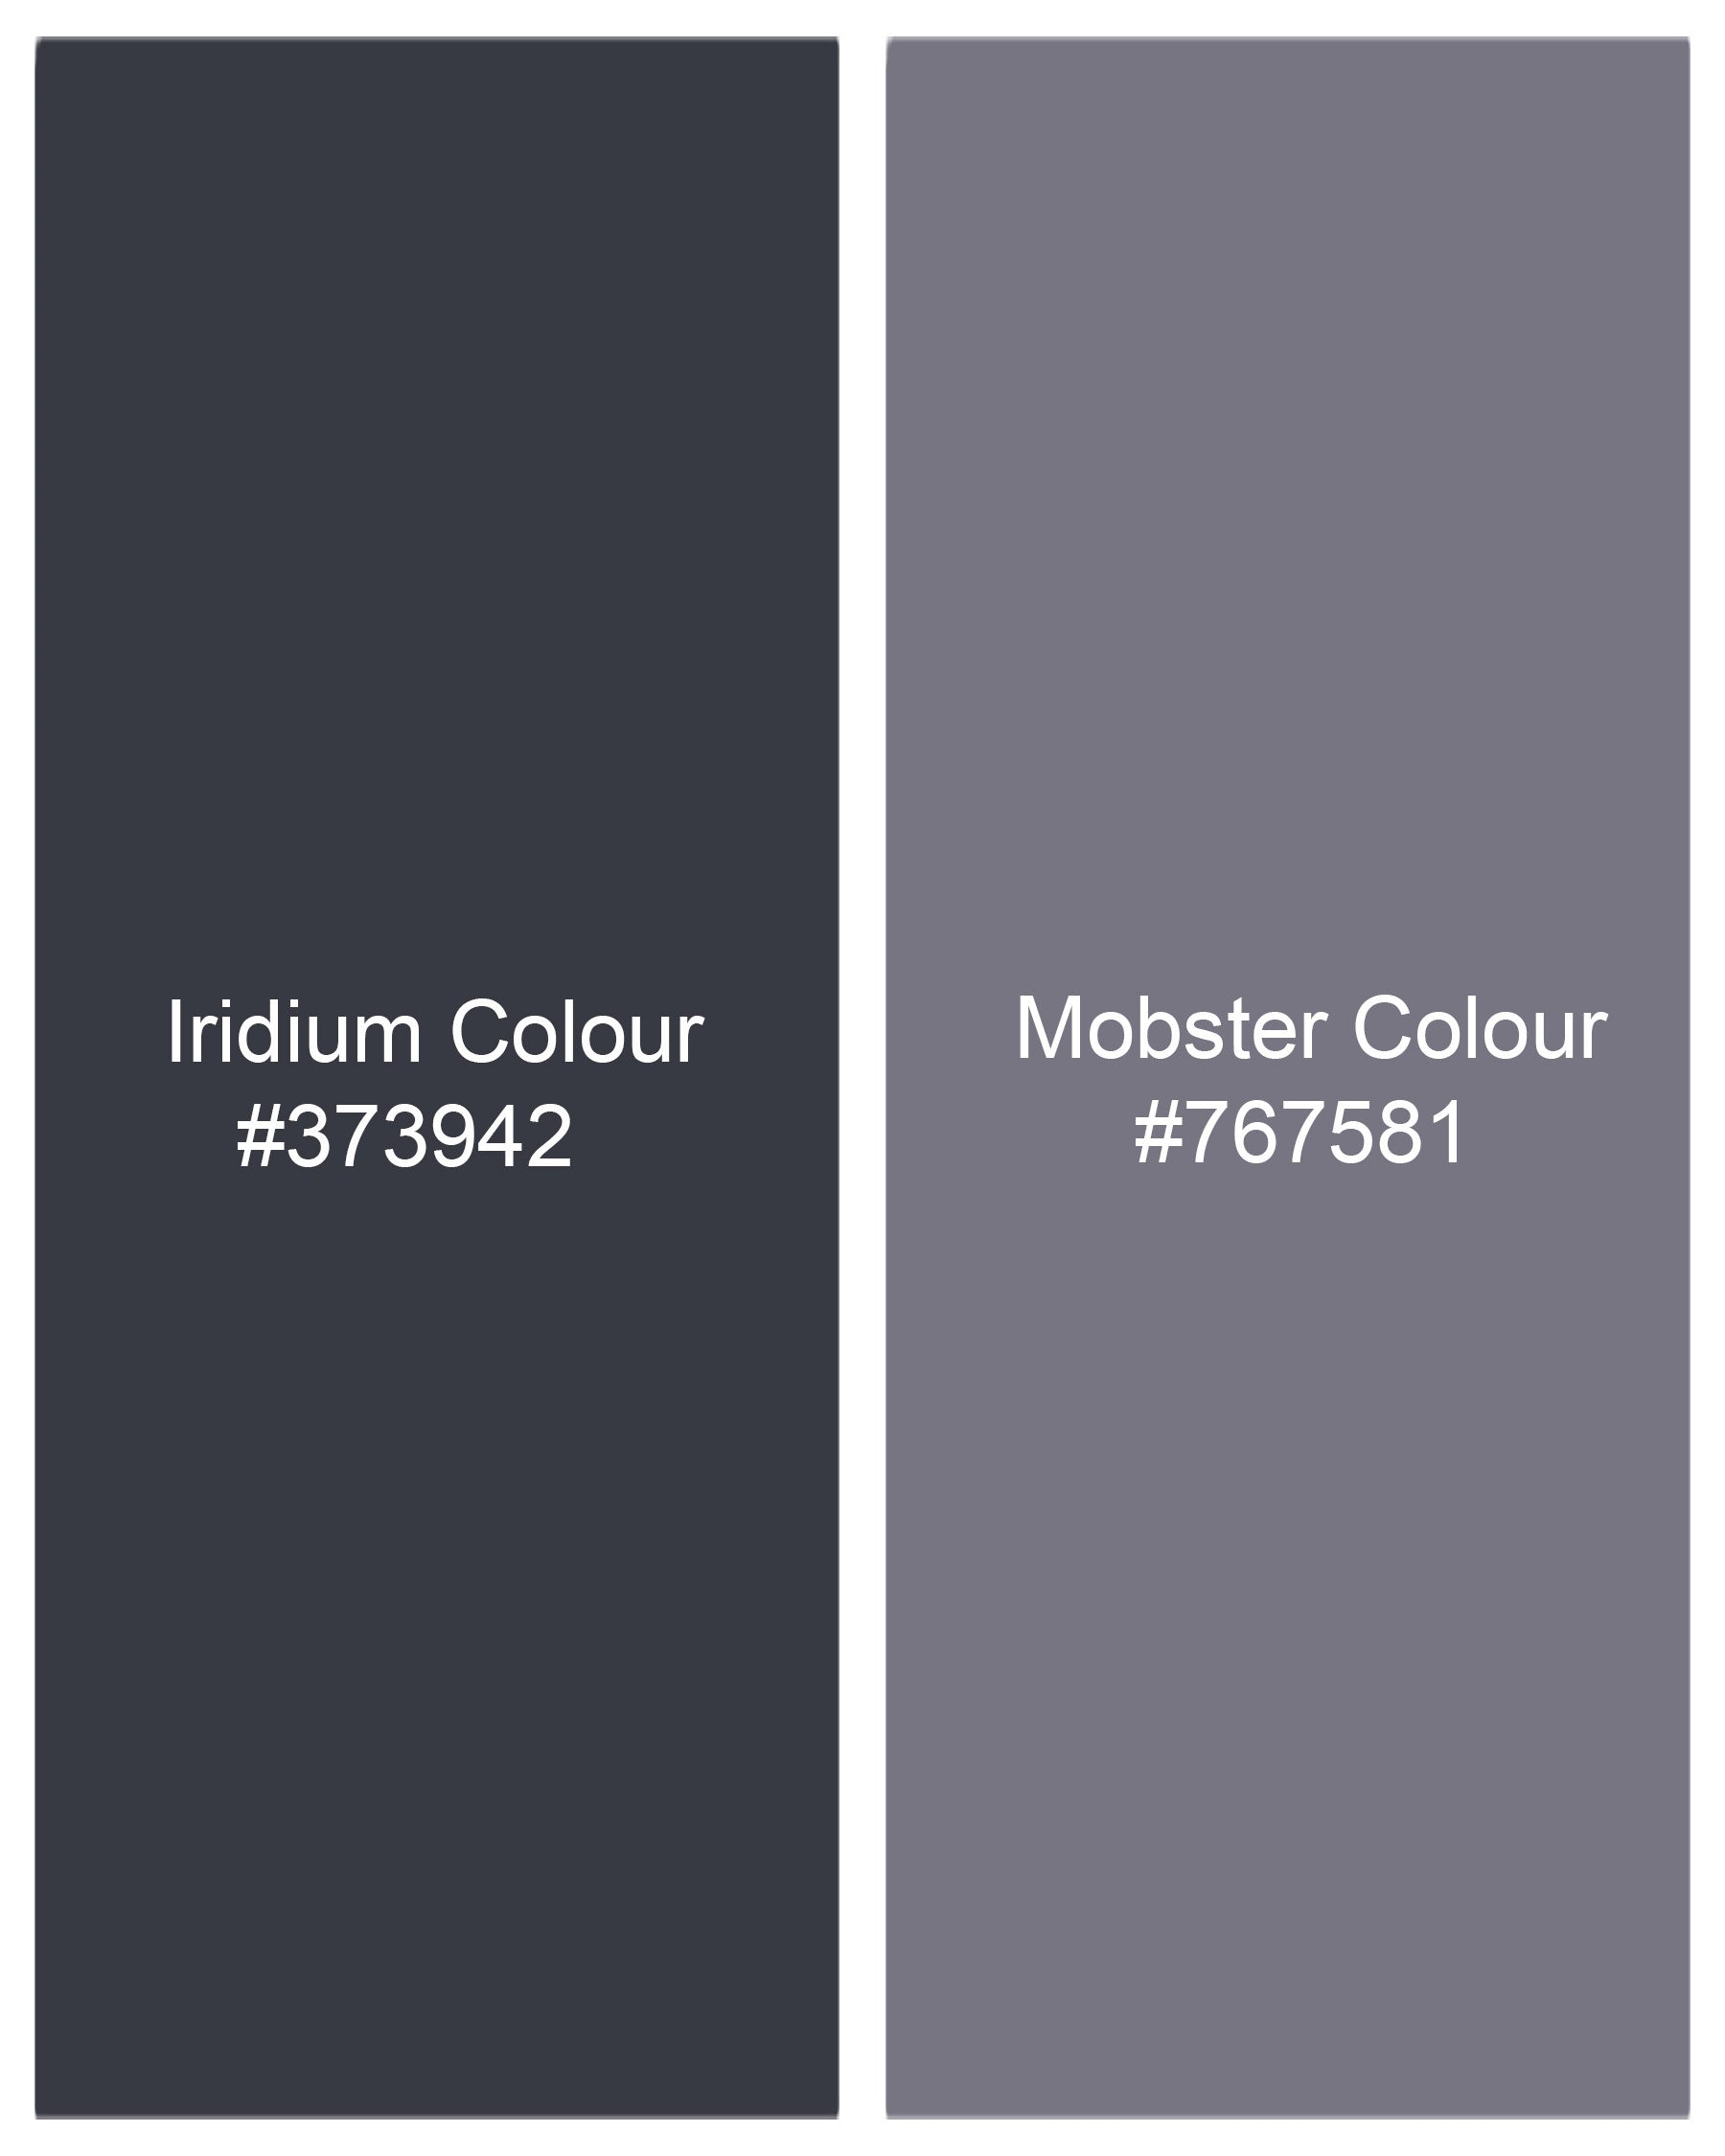 Iridium Dark Gray With Mobster Gray Plaid Pant T2004-28, T2004-30, T2004-32, T2004-34, T2004-36, T2004-38, T2004-40, T2004-42, T2004-44